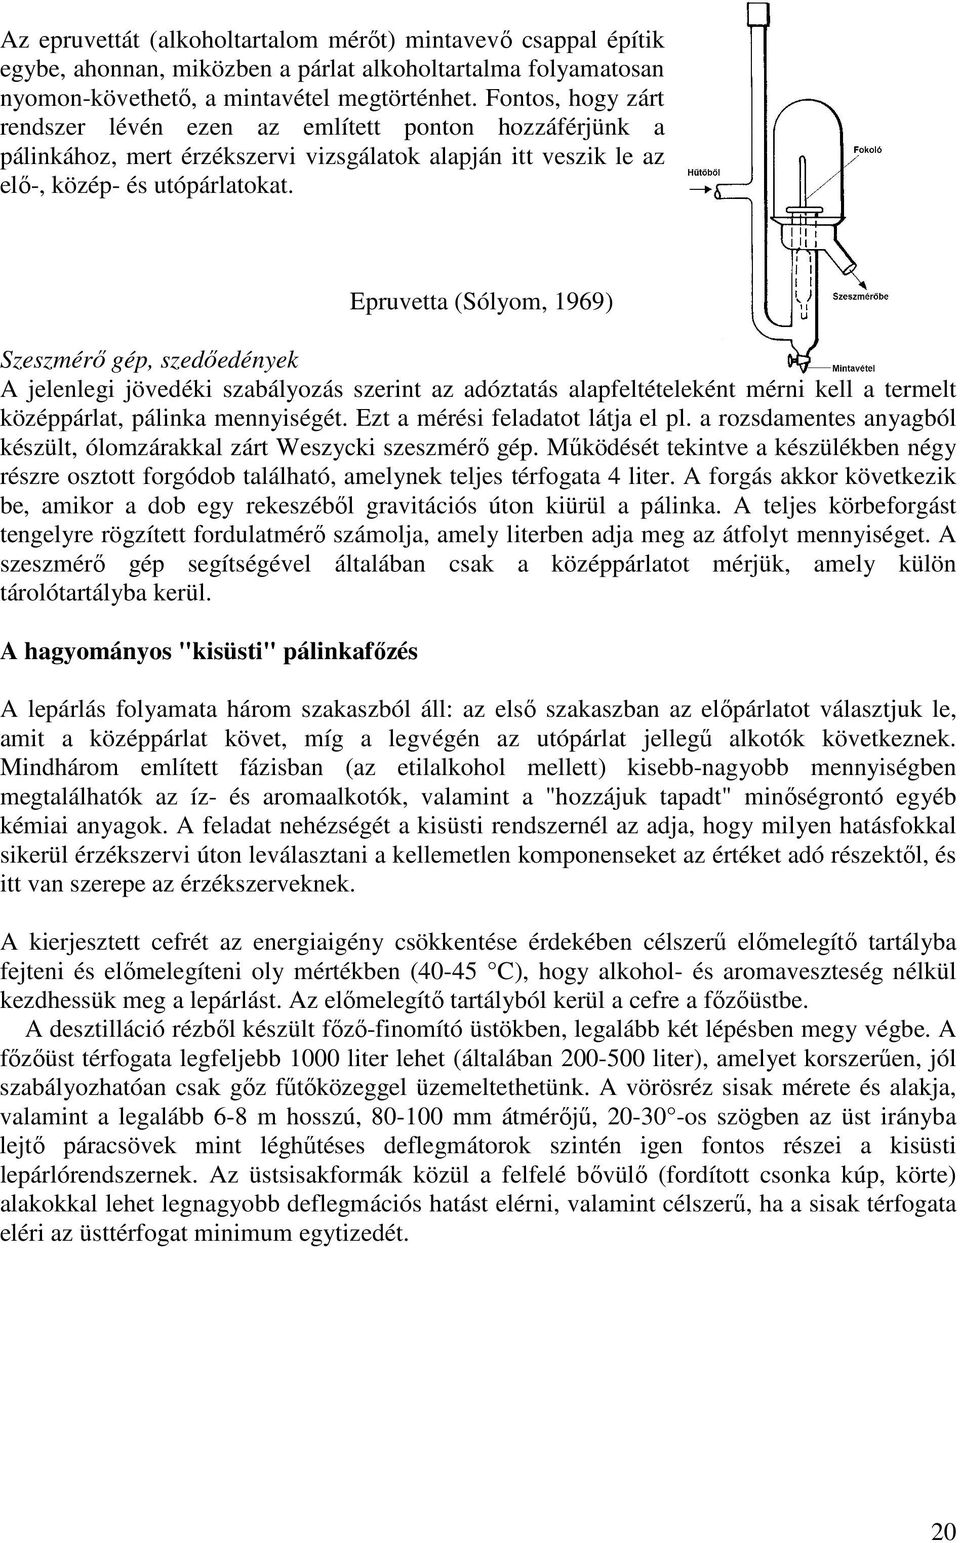 Epruvetta (Sólyom, 1969) Szeszmérı gép, szedıedények A jelenlegi jövedéki szabályozás szerint az adóztatás alapfeltételeként mérni kell a termelt középpárlat, pálinka mennyiségét.